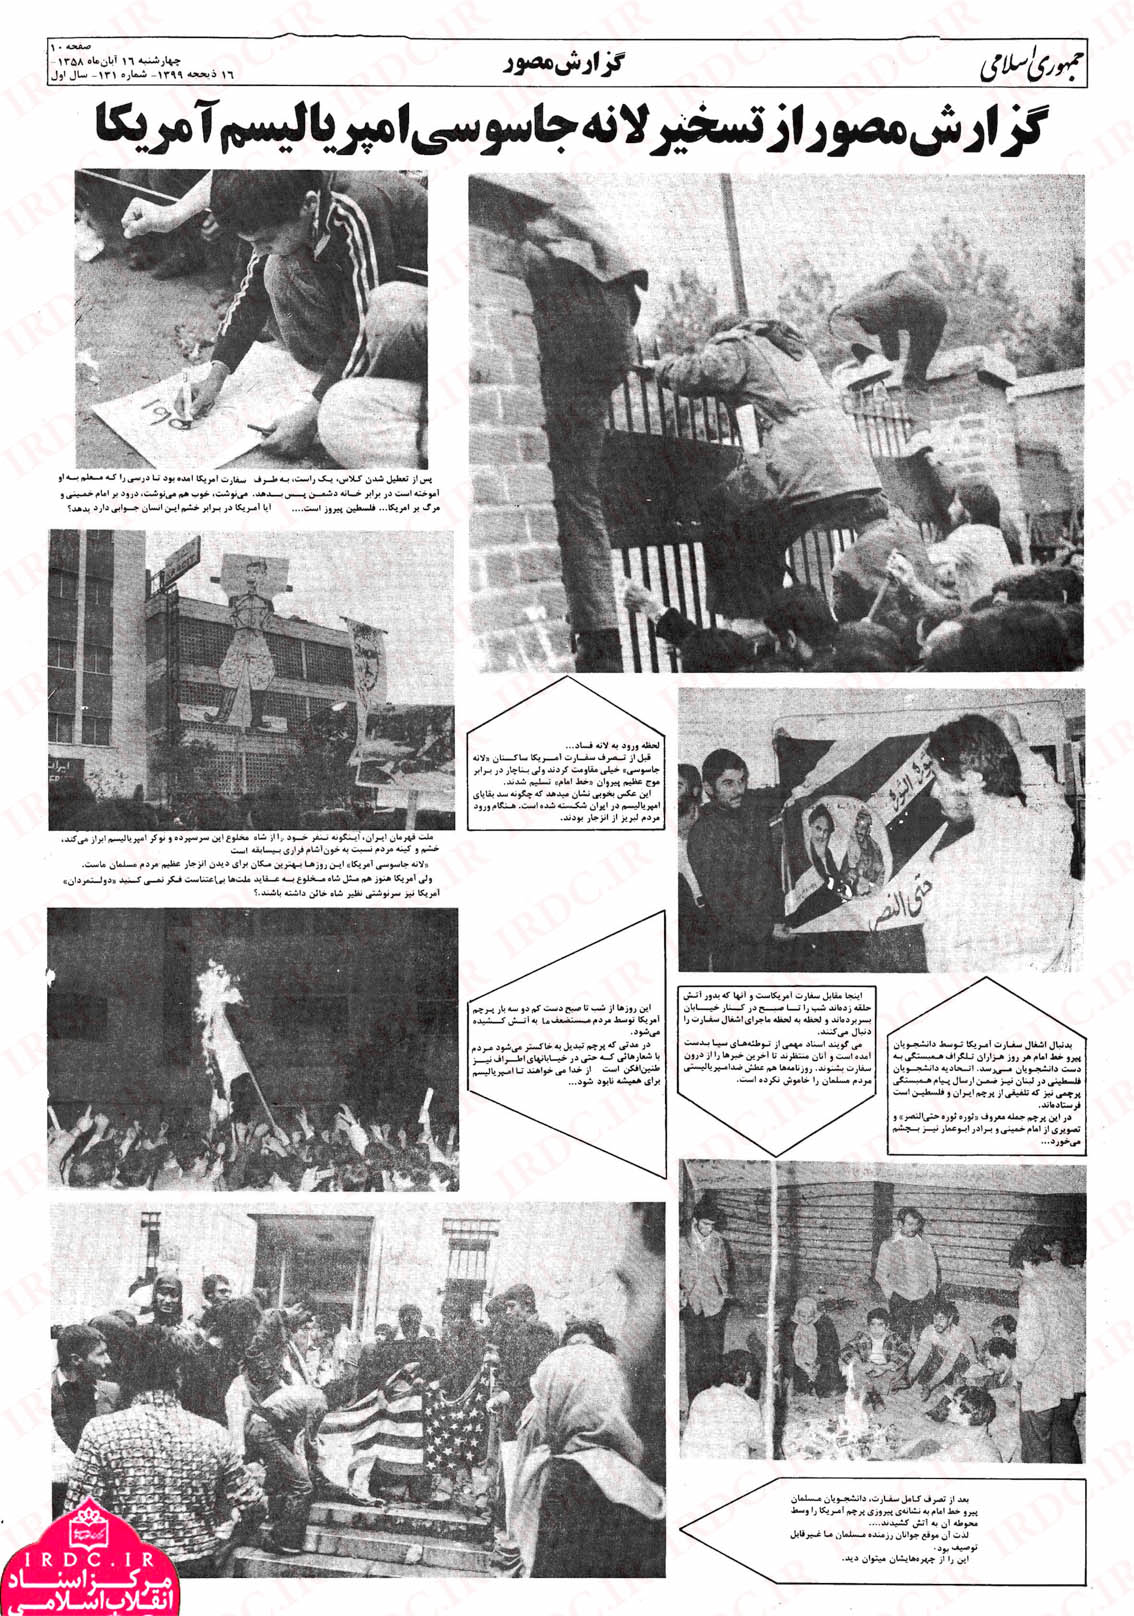 گزارش مطبوعات از اشغال انقلابی سفارت امریکا